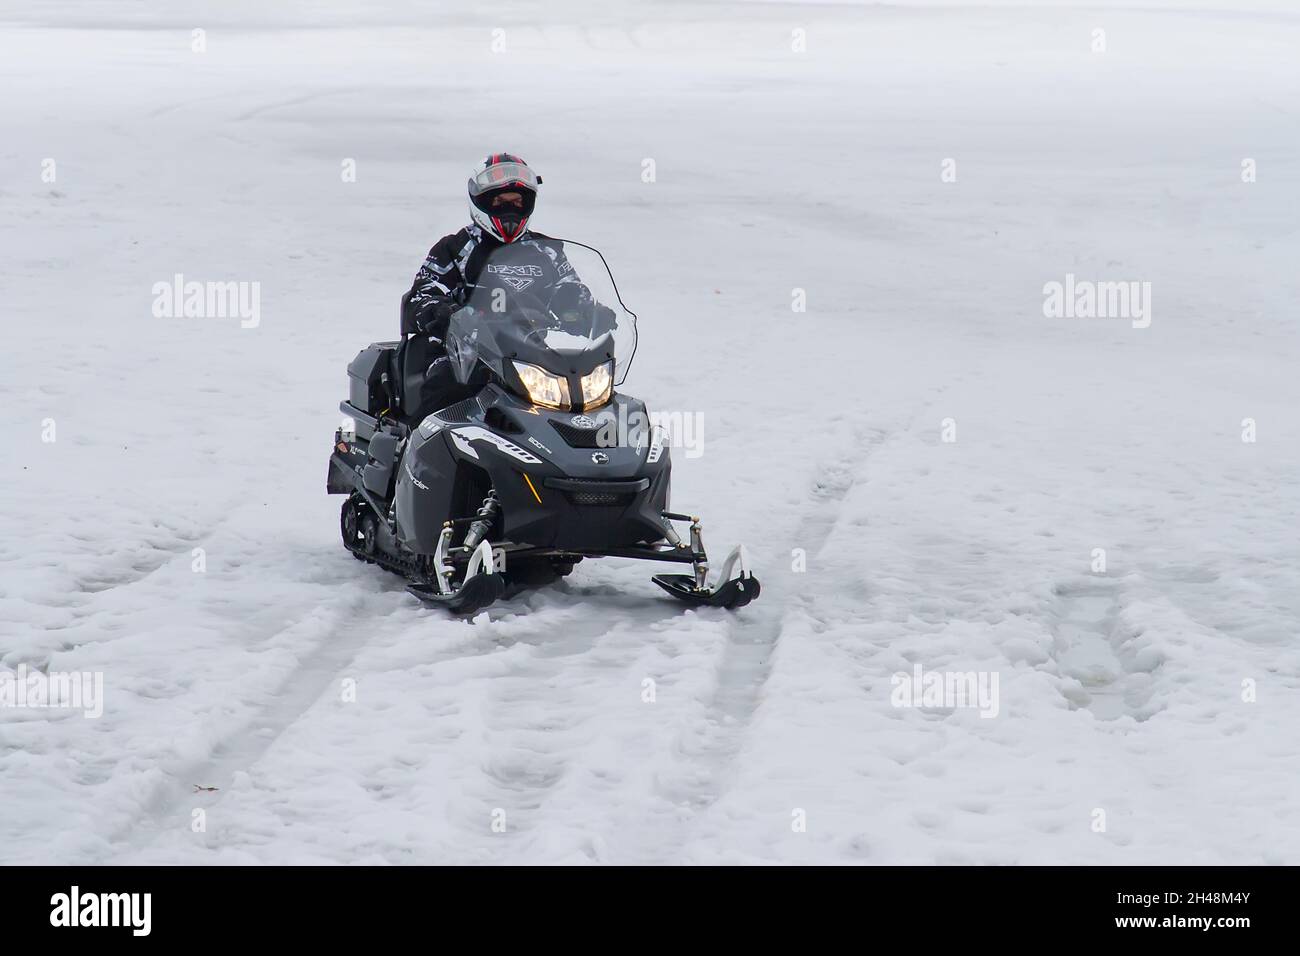 22.02.2014. Russland. Region Moskau. Transport von Fahrzeugen. Ein Mann auf einem Schneemobil bewegt sich auf dem Eis. Stockfoto